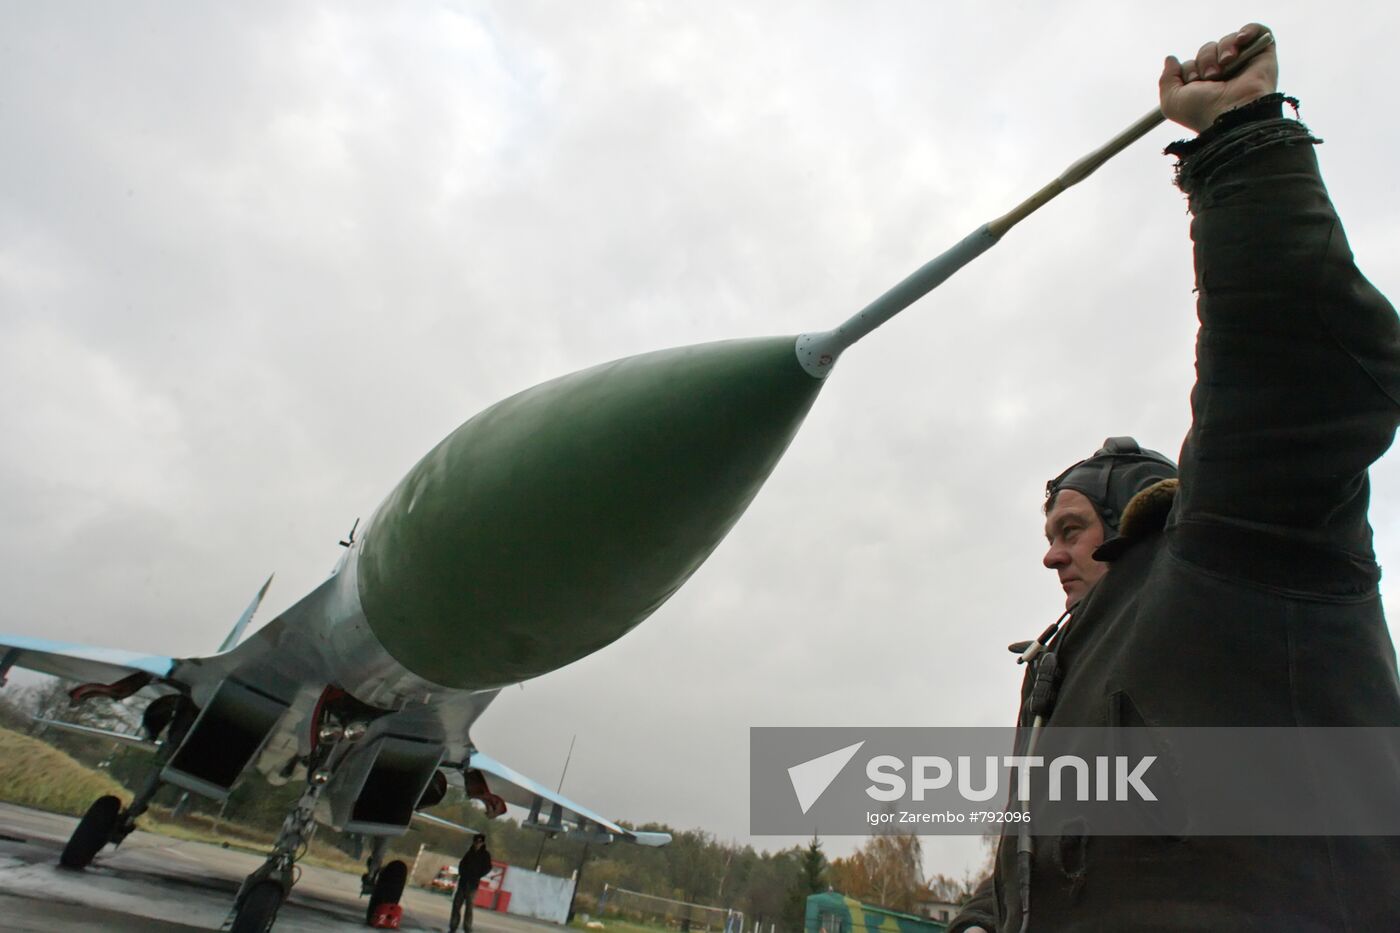 Su-27 jet fighter prepared for flight